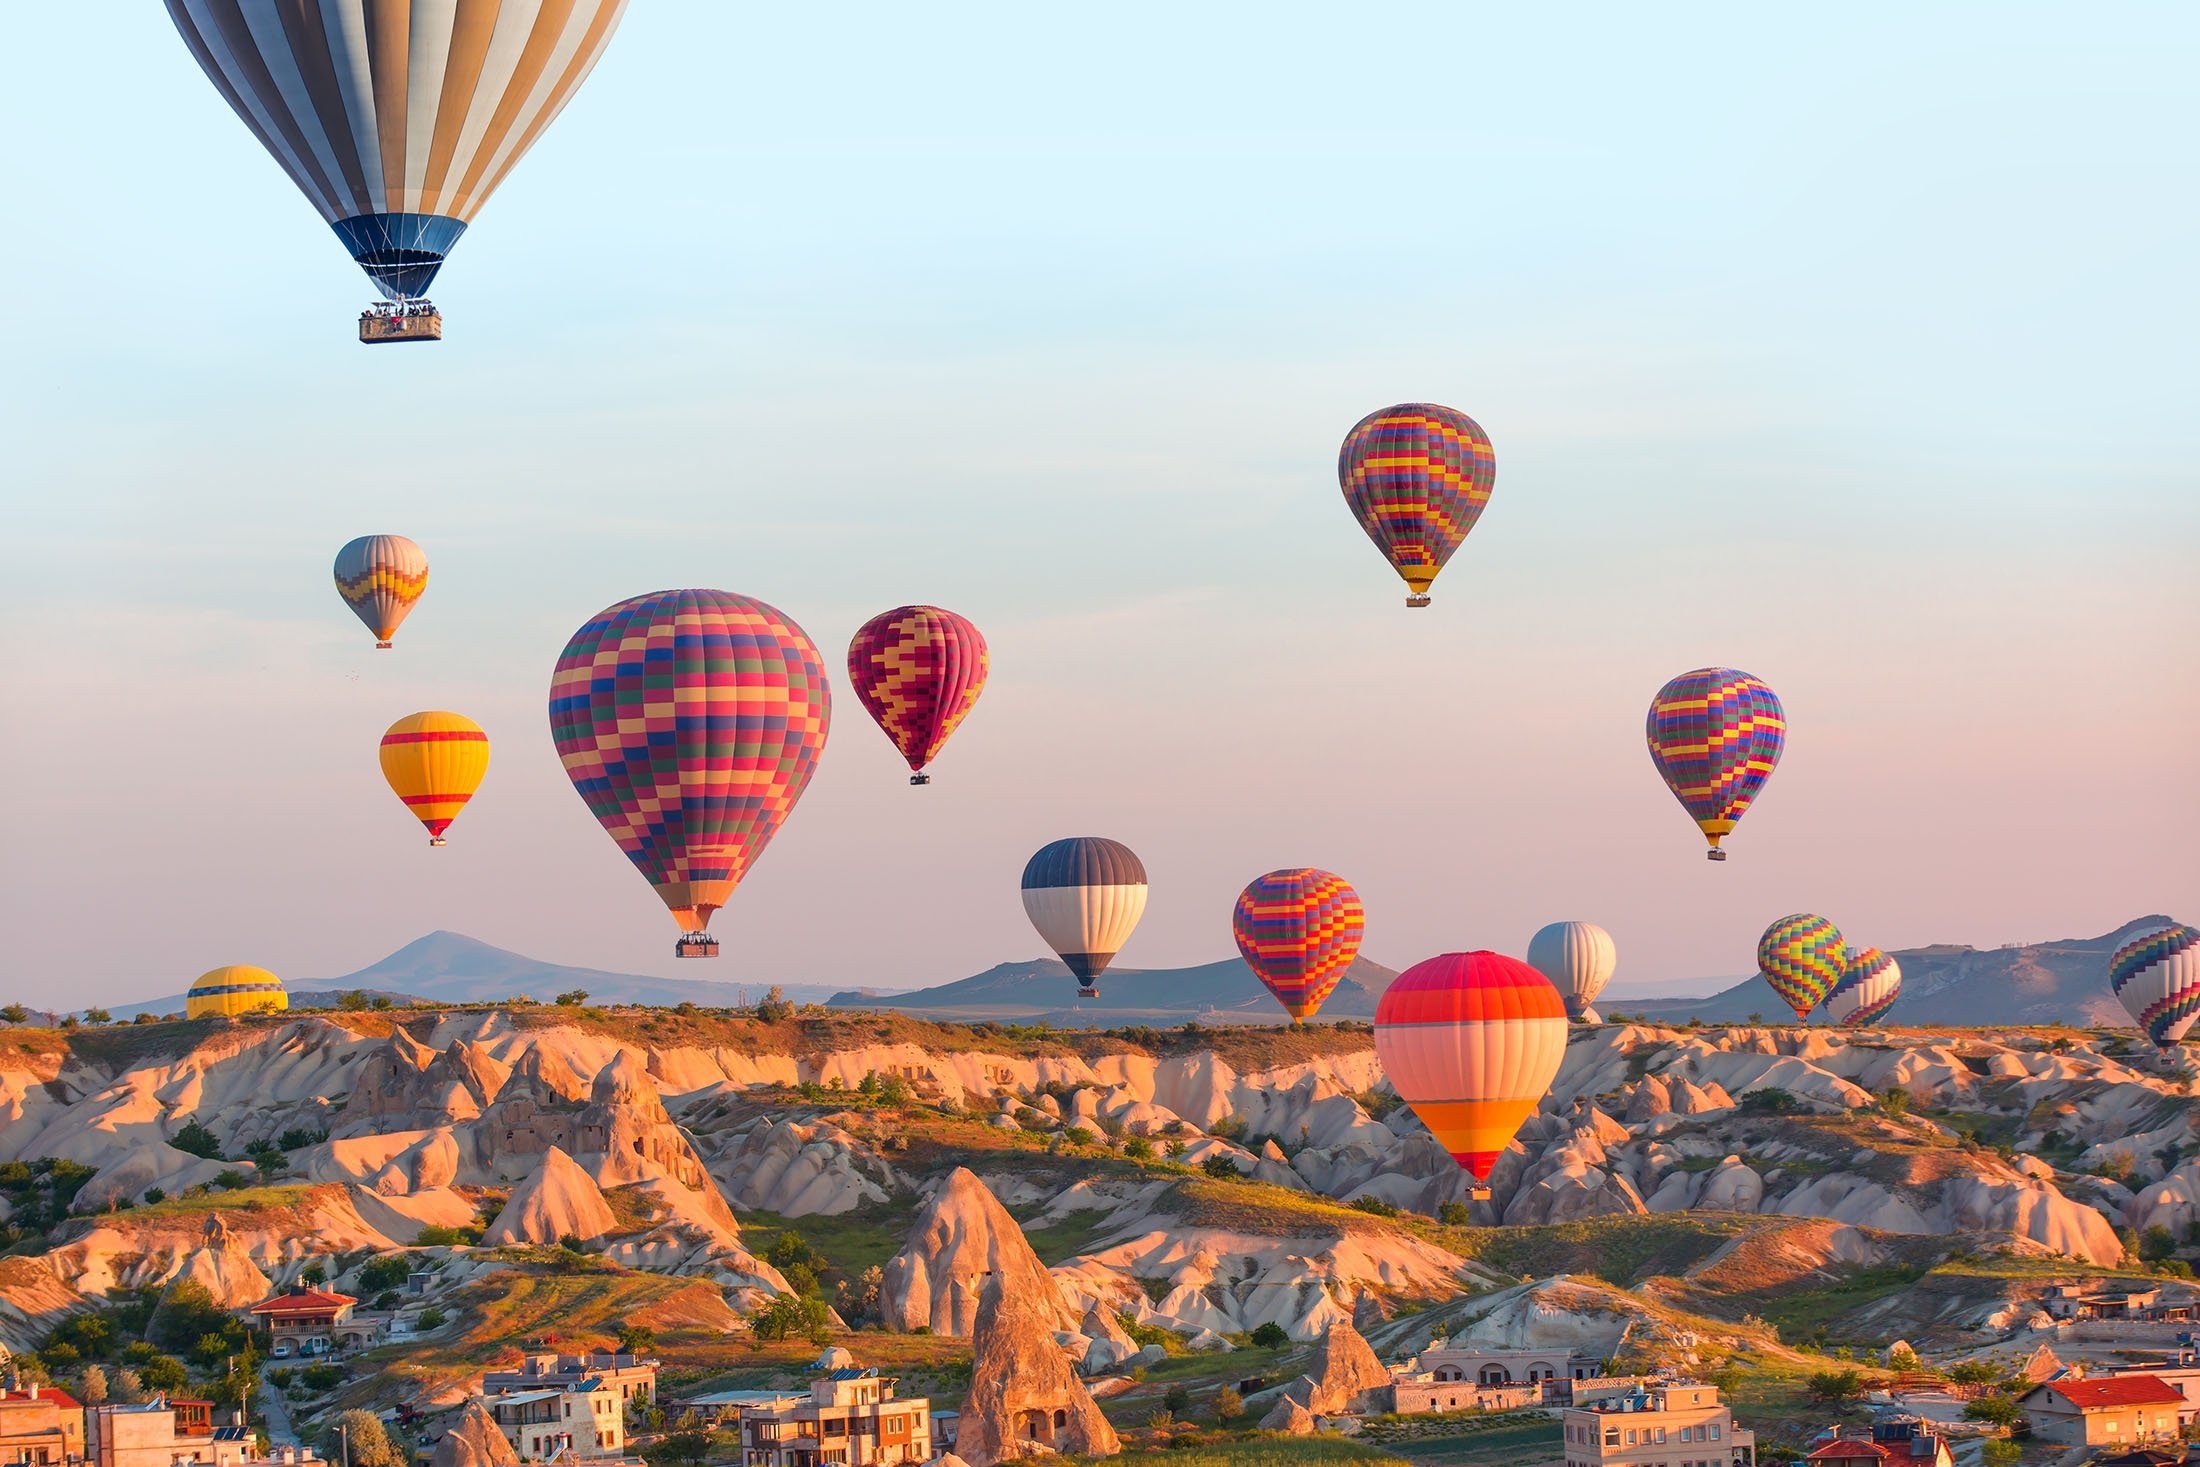 Birma doel Portier Hot air balloon festival kicks off in Turkey's famed Cappadocia | Daily  Sabah